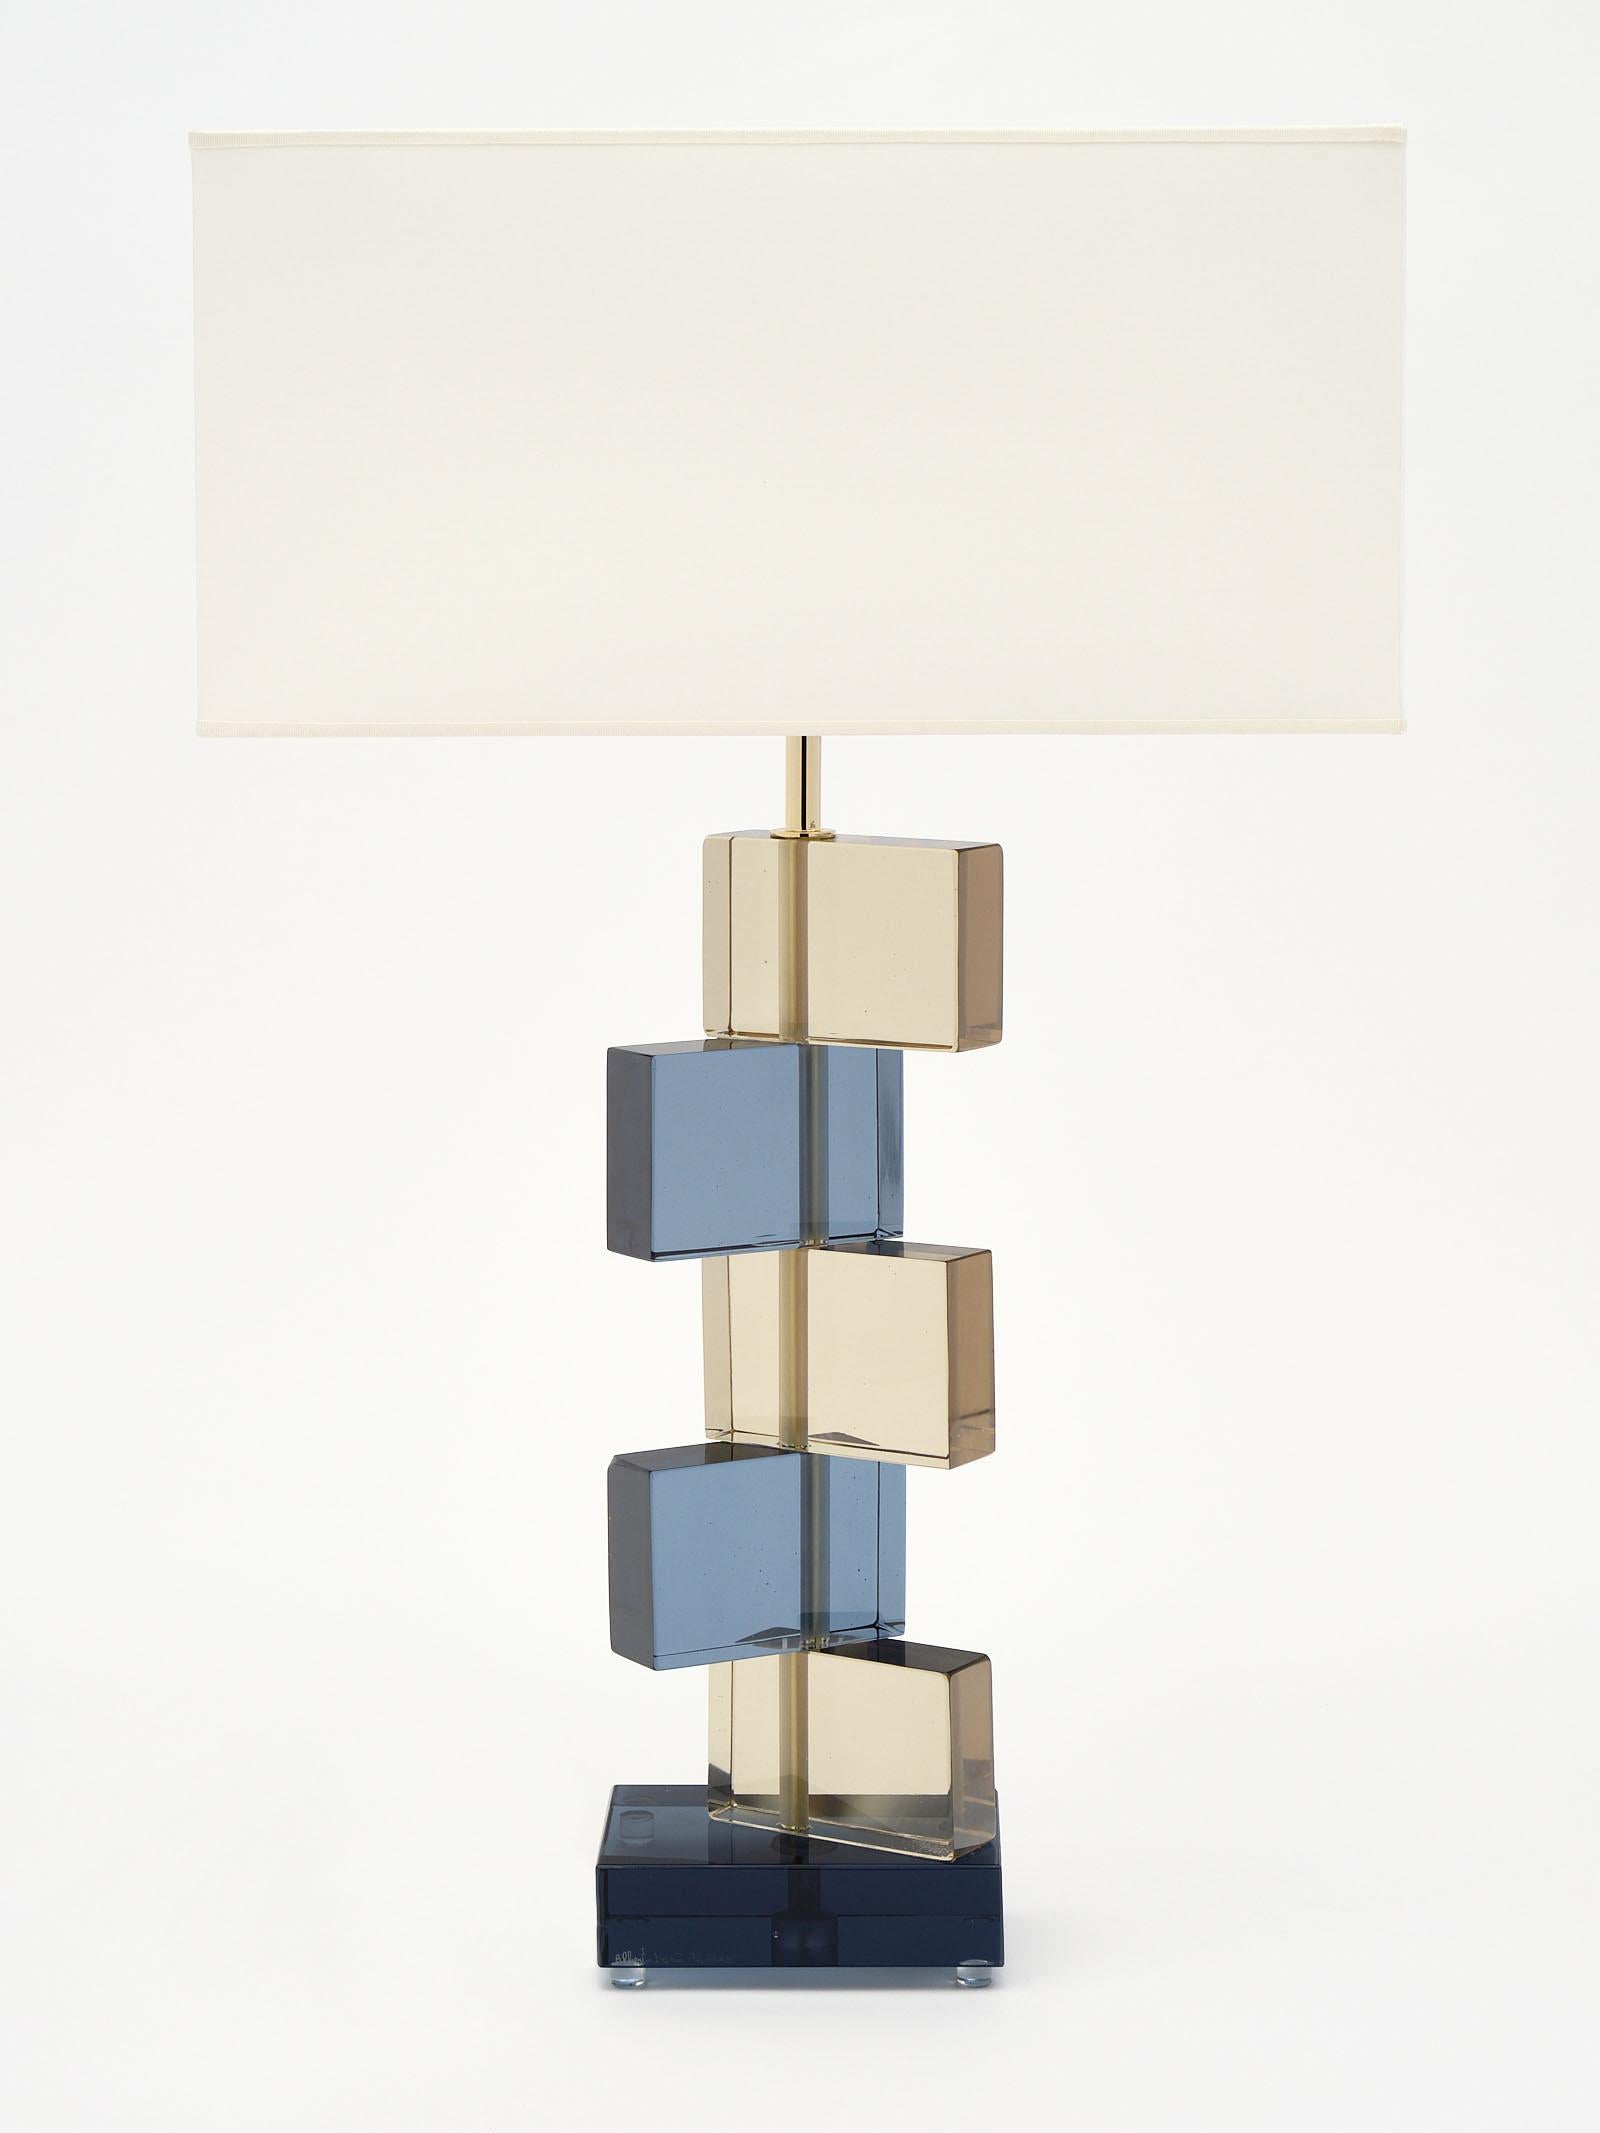 Geometrische Lampen aus bernsteinfarbenem und blauem Muranoglas, signiert von Maestro Alberto Dona. Wir lieben den gestapelten Blockeffekt der mundgeblasenen Glaselemente. Sie wurden neu verkabelt, um den US-Normen zu entsprechen.

Dieses Paar